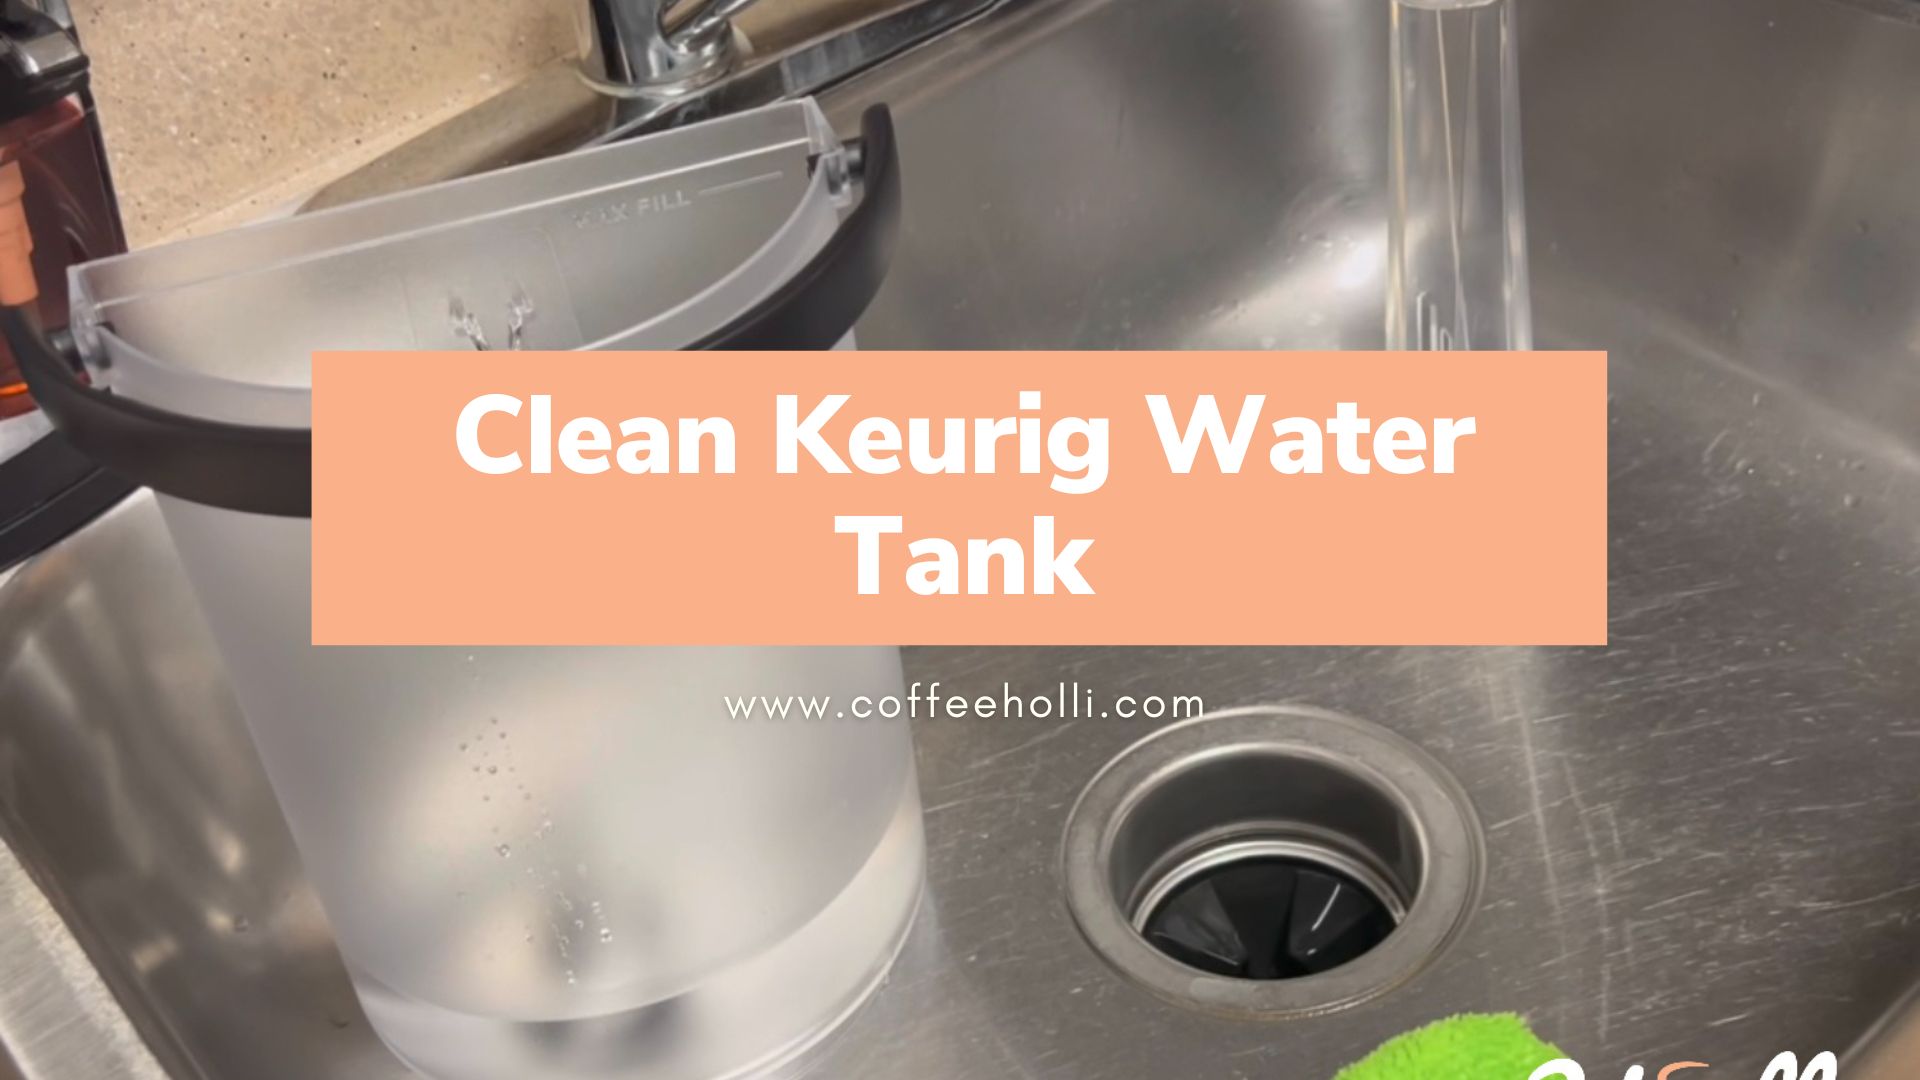 Clean Keurig Water Tank